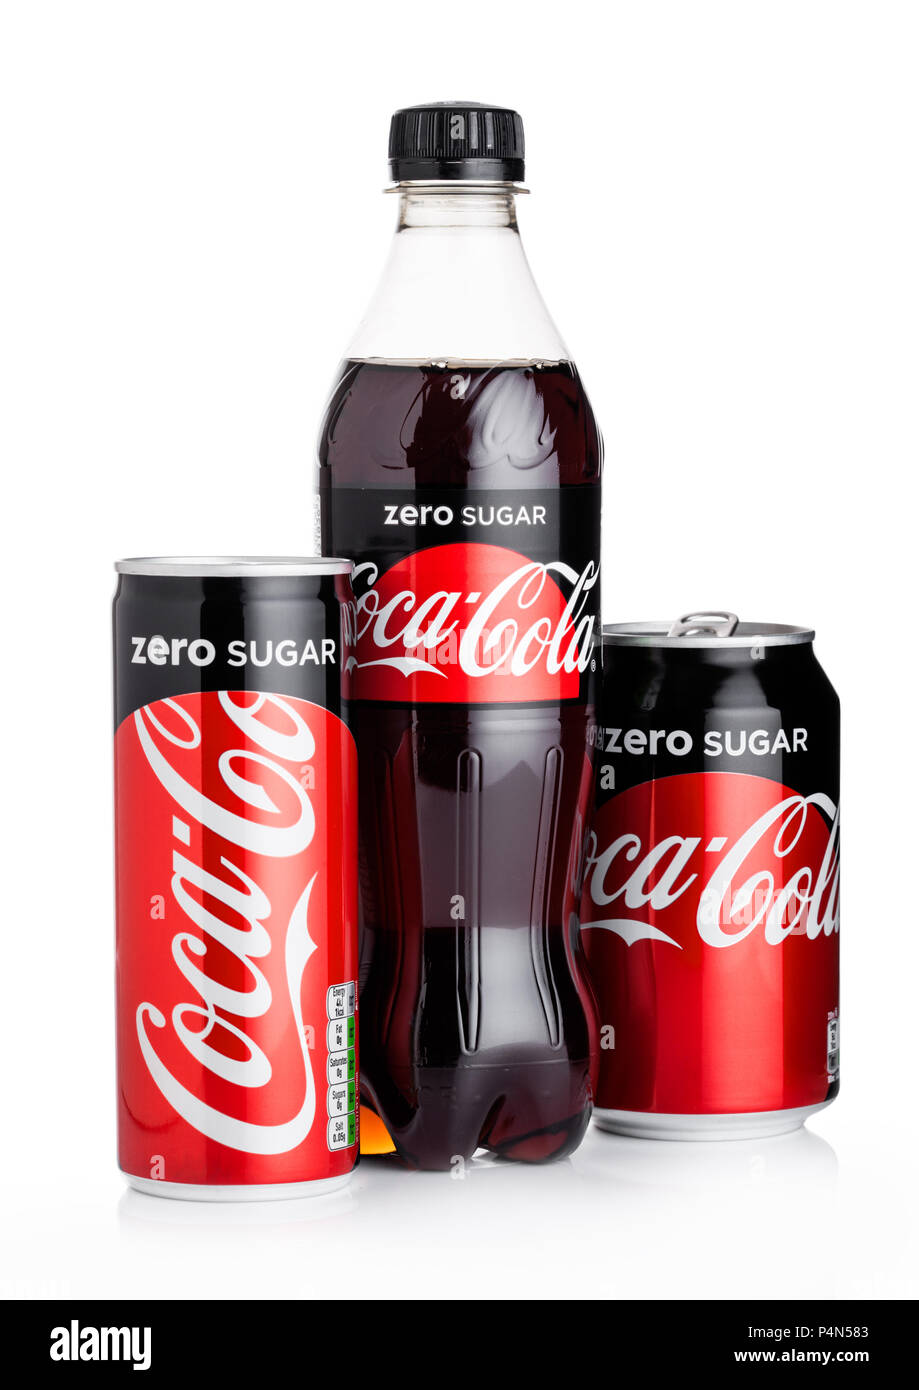 LONDON, UK - Juni 02, 2018: Flasche Diät Coca-Cola Zero auf weißem Hintergrund. Coca-Cola ist einer der beliebtesten Soda Produkte in der Welt. Stockfoto